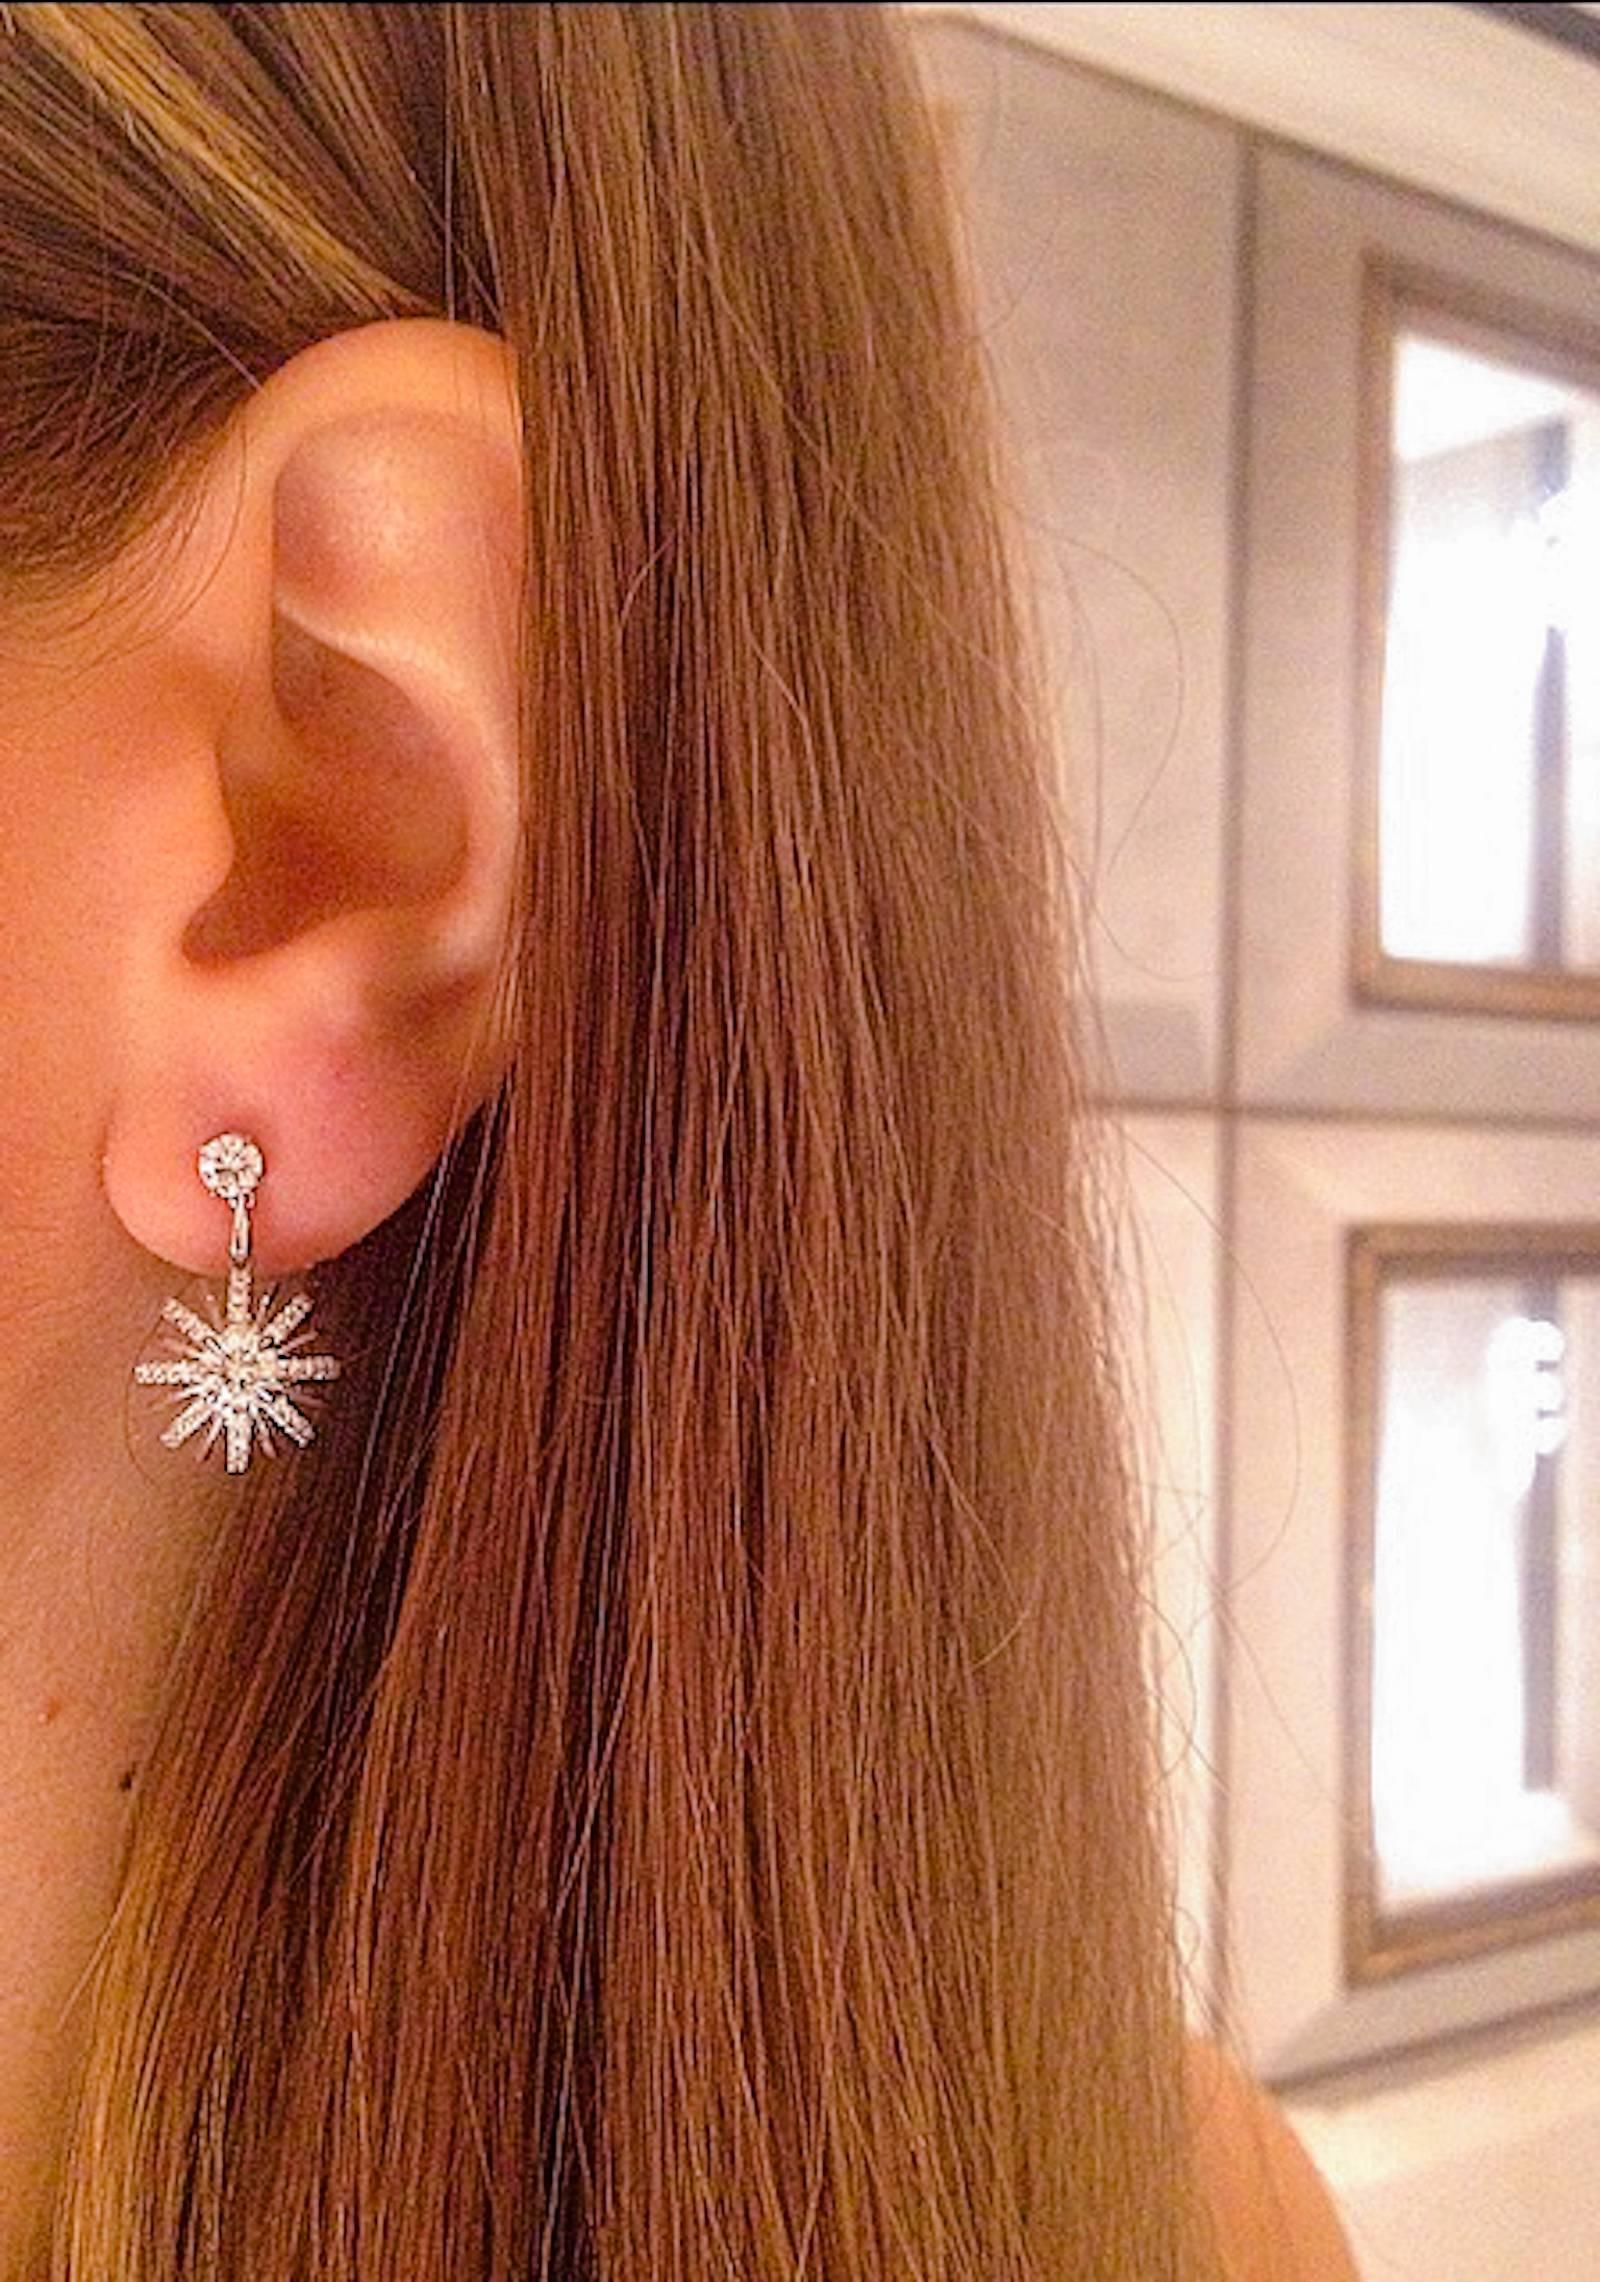 dangling snowflake earrings